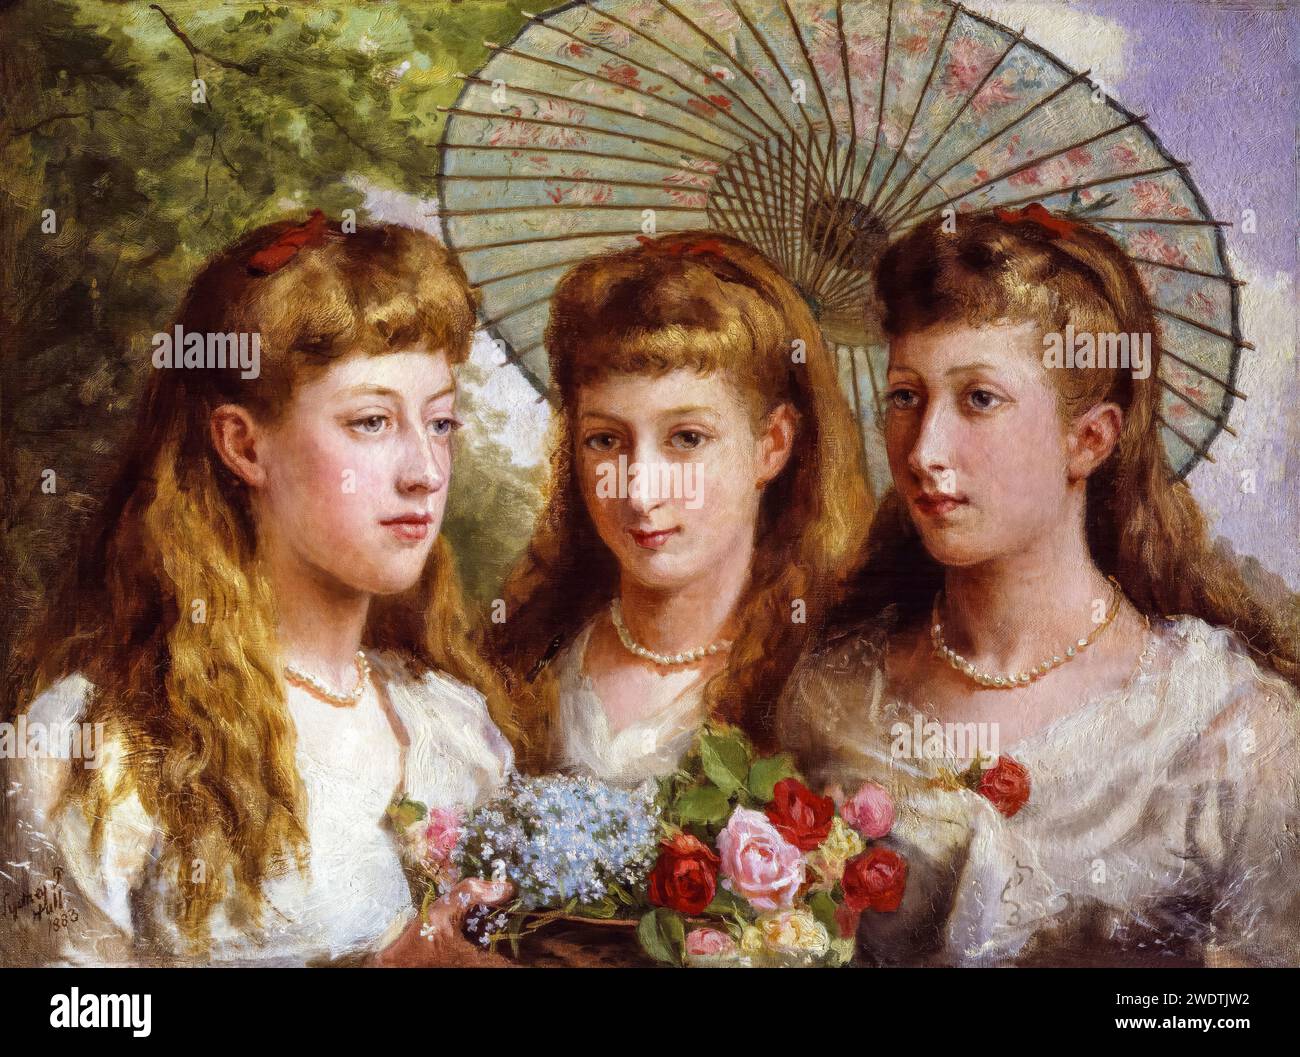 Le tre figlie di re Edoardo VII e della regina Alessandra, ritratto dipinto ad olio su tela di Sydney Prior Hall, 1883 Foto Stock